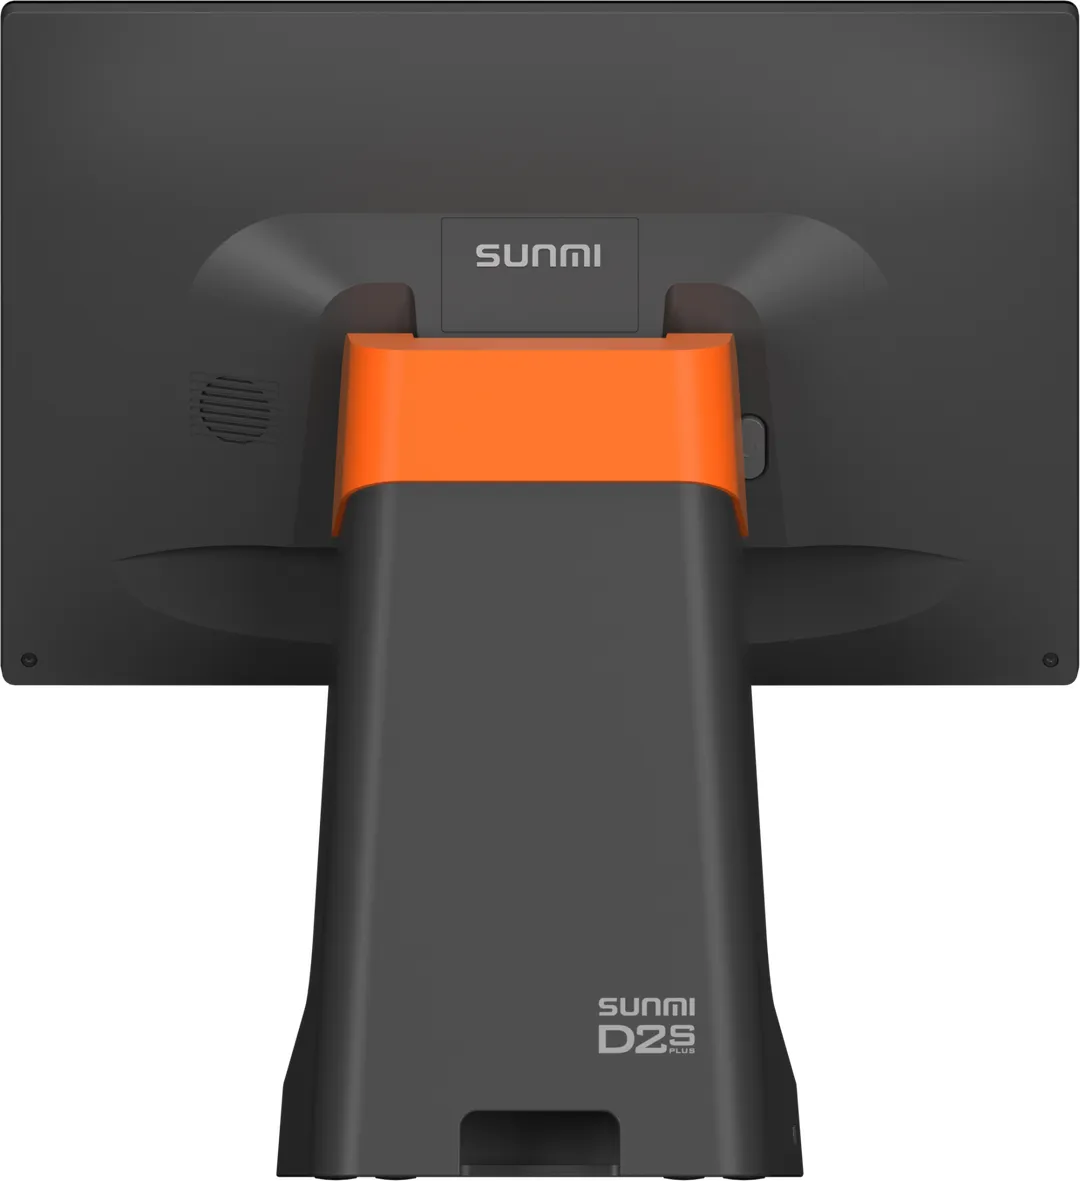 Sunmi - Termina POS Android Sunmi D2S Plus